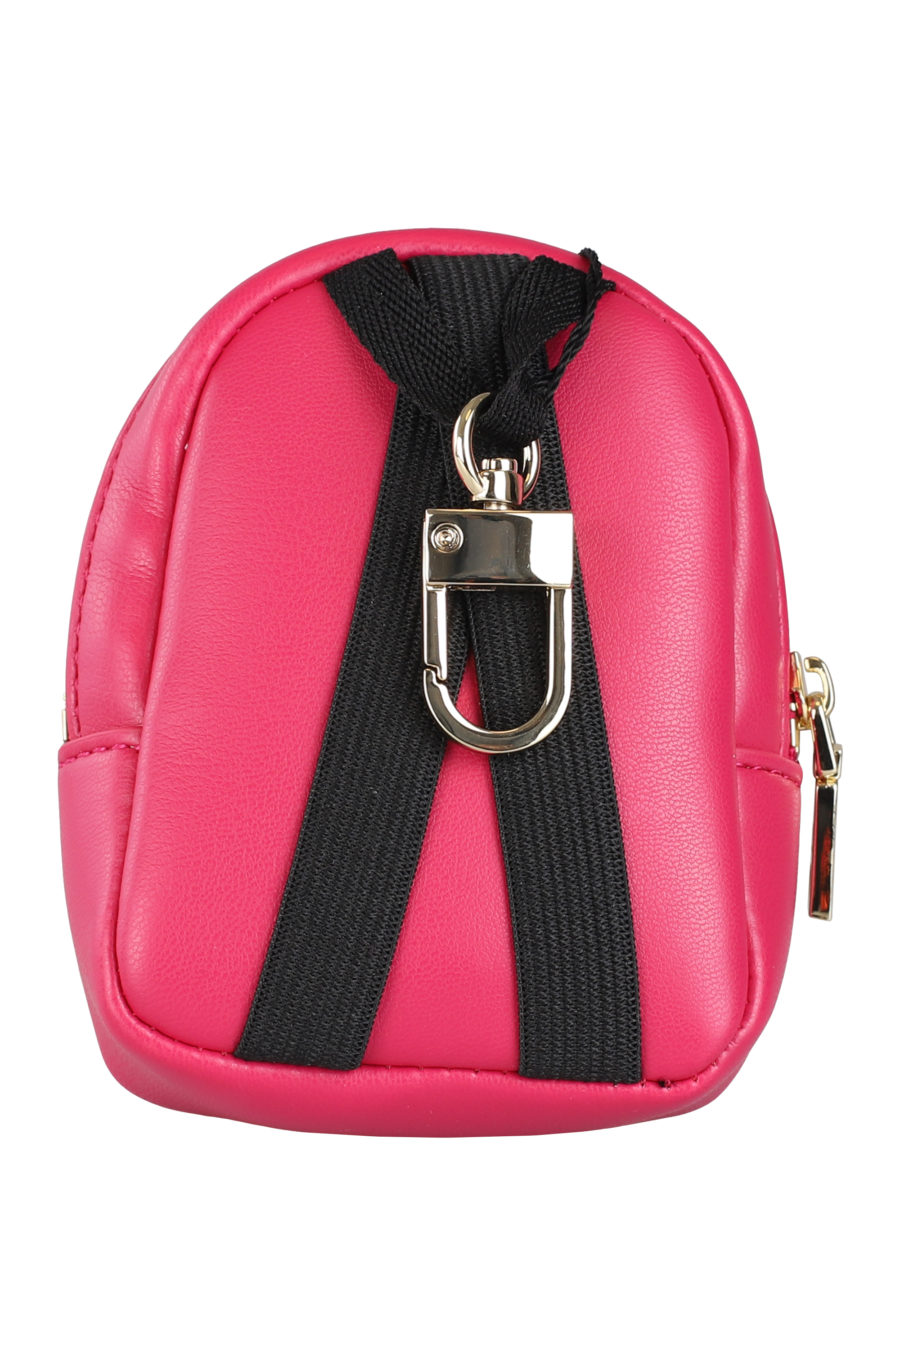 Porte-clés mini sac à dos rose - IMG 9686